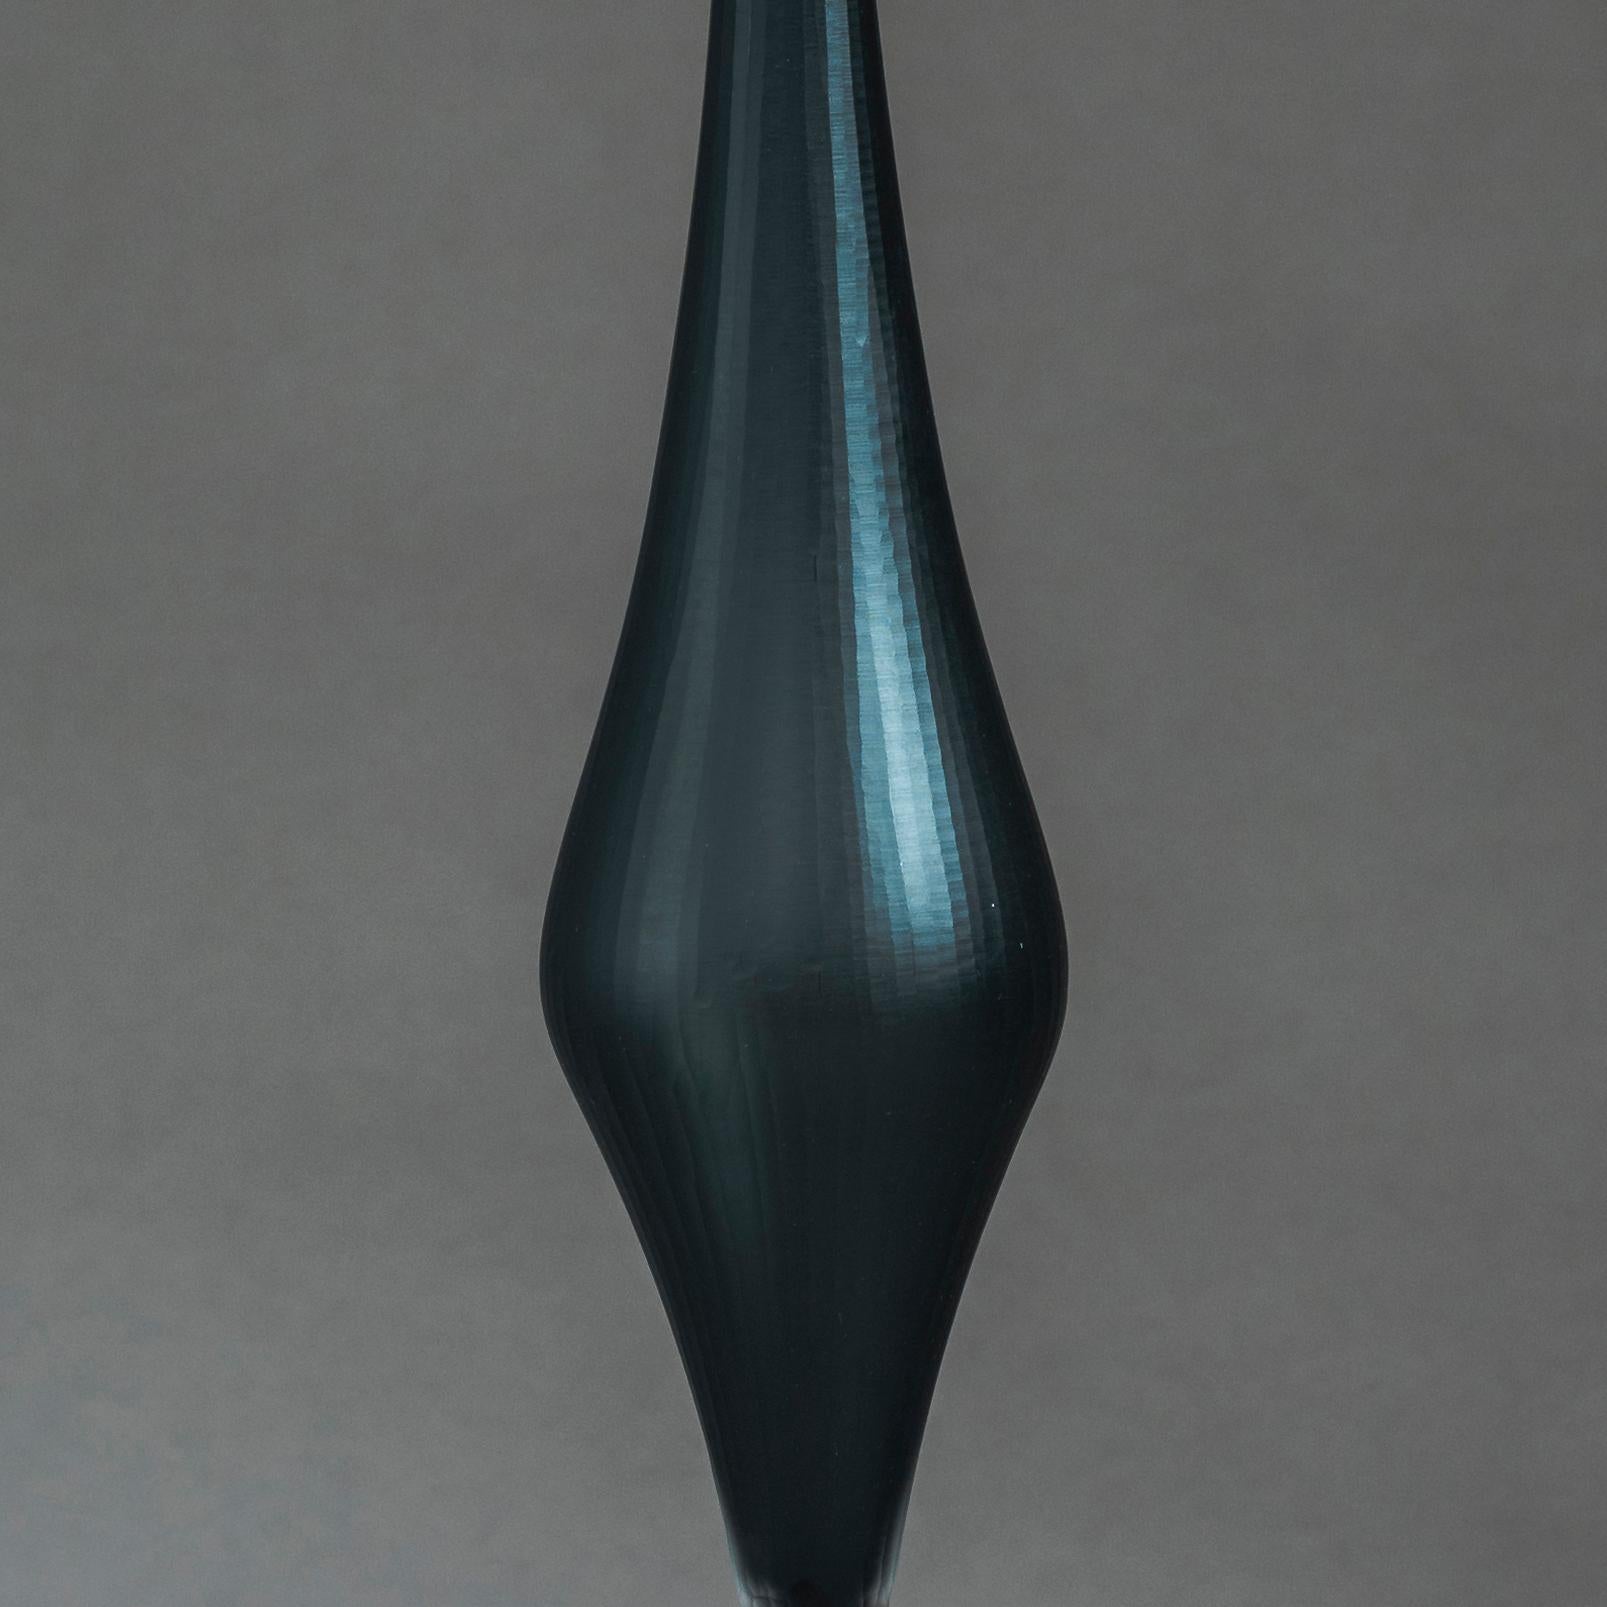 Organic Modern Deep Red Twilight III, a Glass Sculpture by Philip Baldwin & Monica Guggisberg